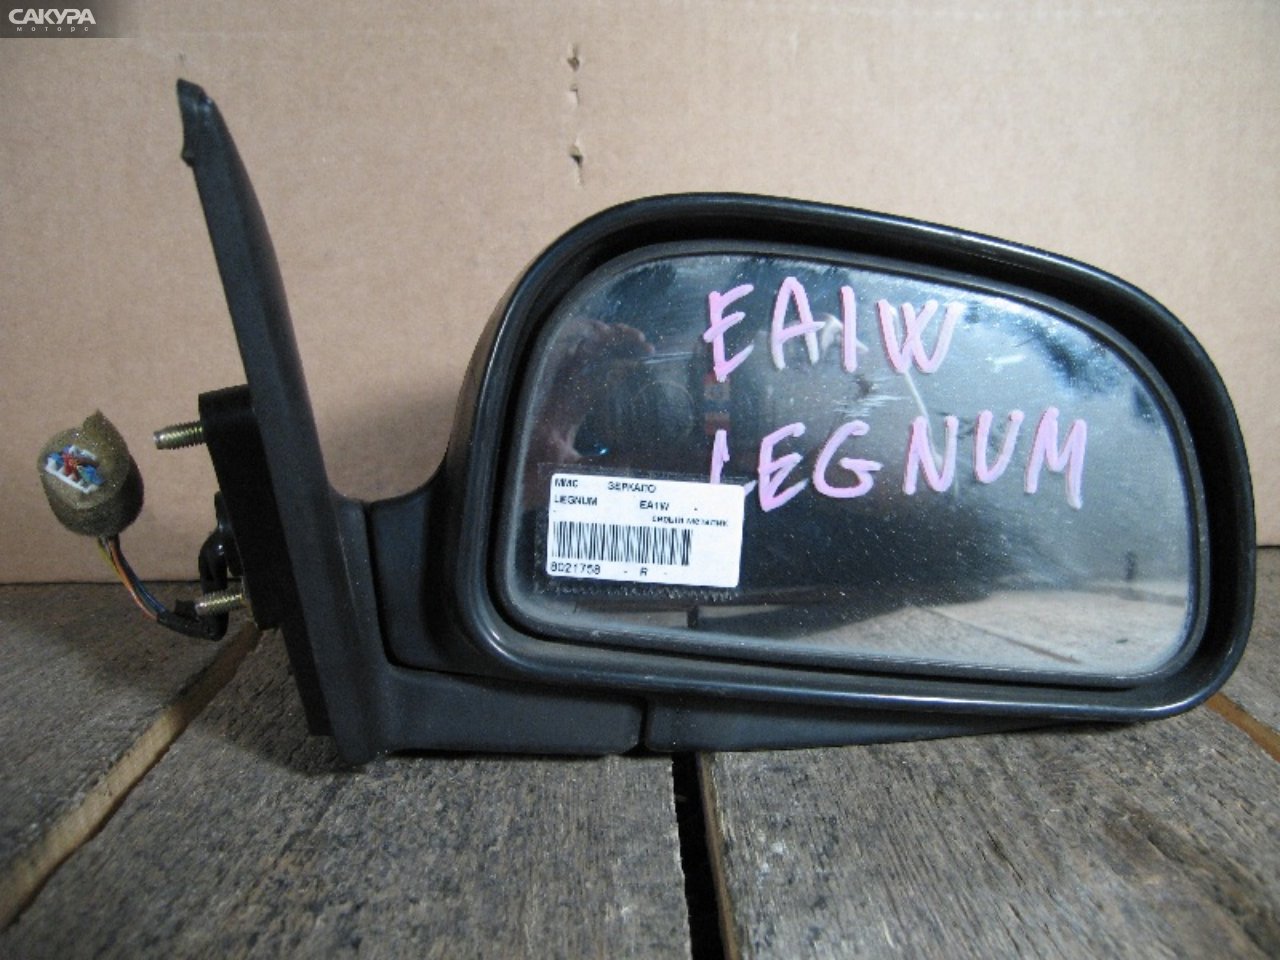 Зеркало боковое правое Mitsubishi Legnum EA1W: купить в Сакура Абакан.